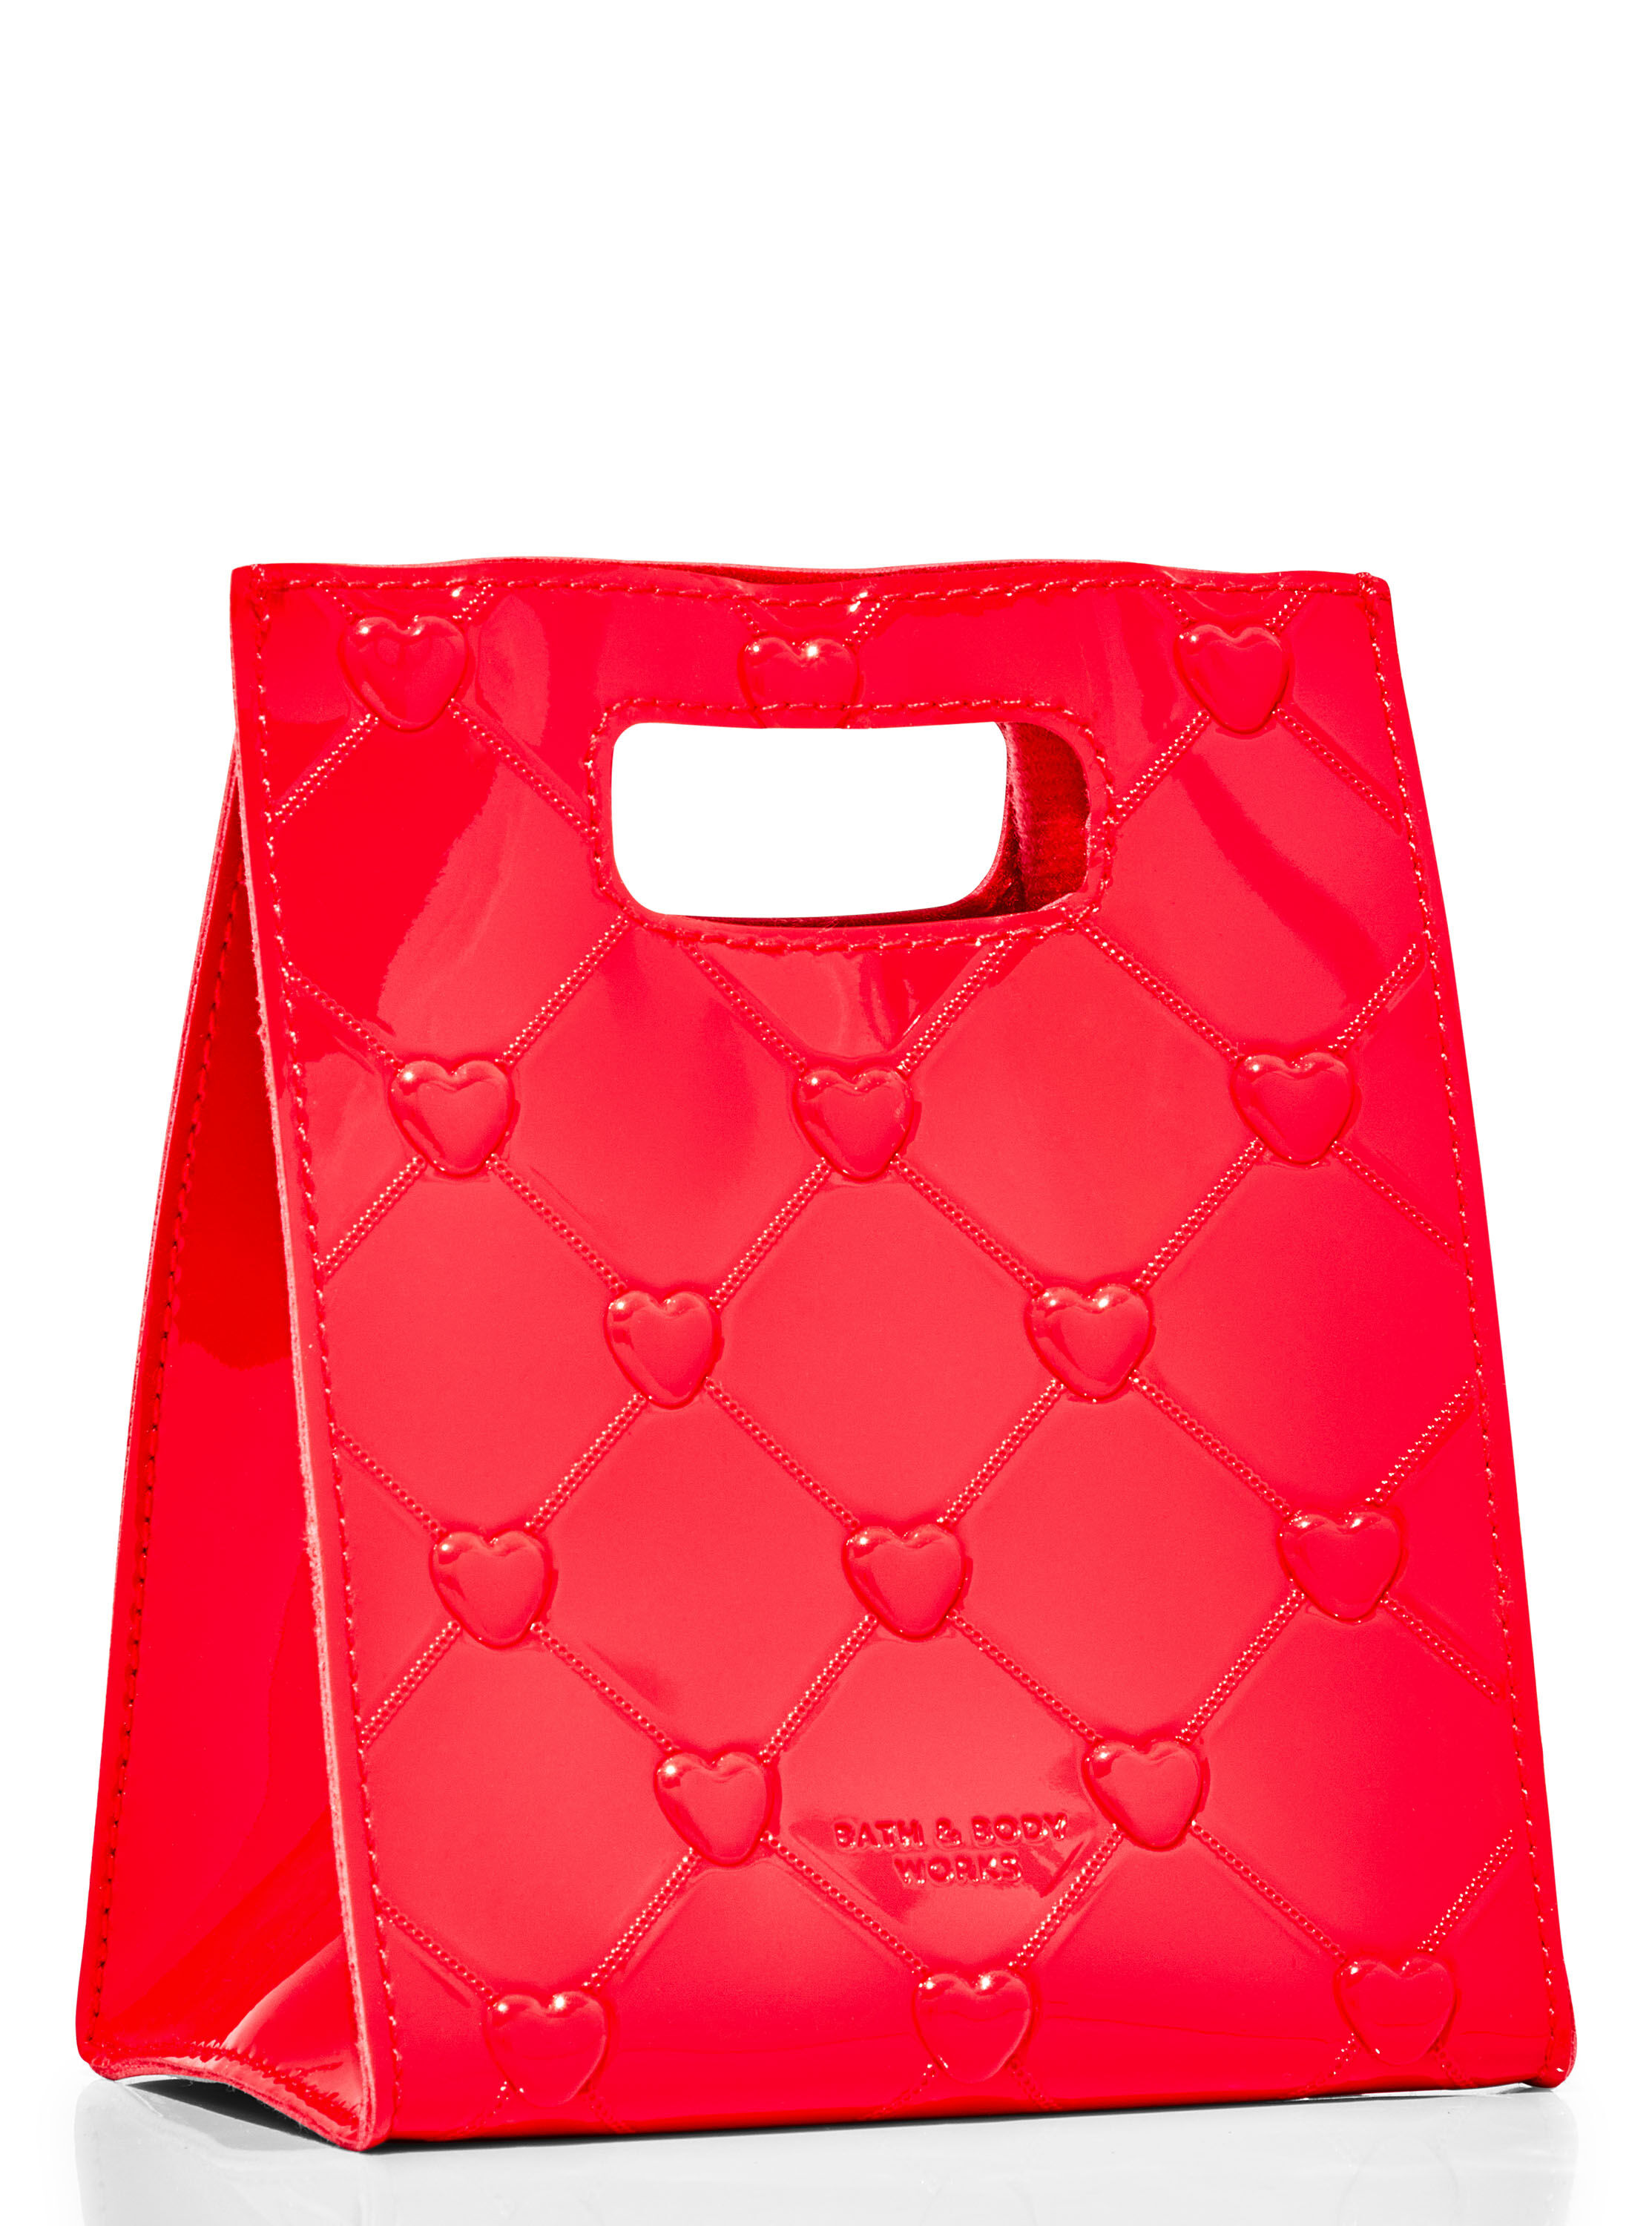 Red Puffy Heart Mini Gift Bag